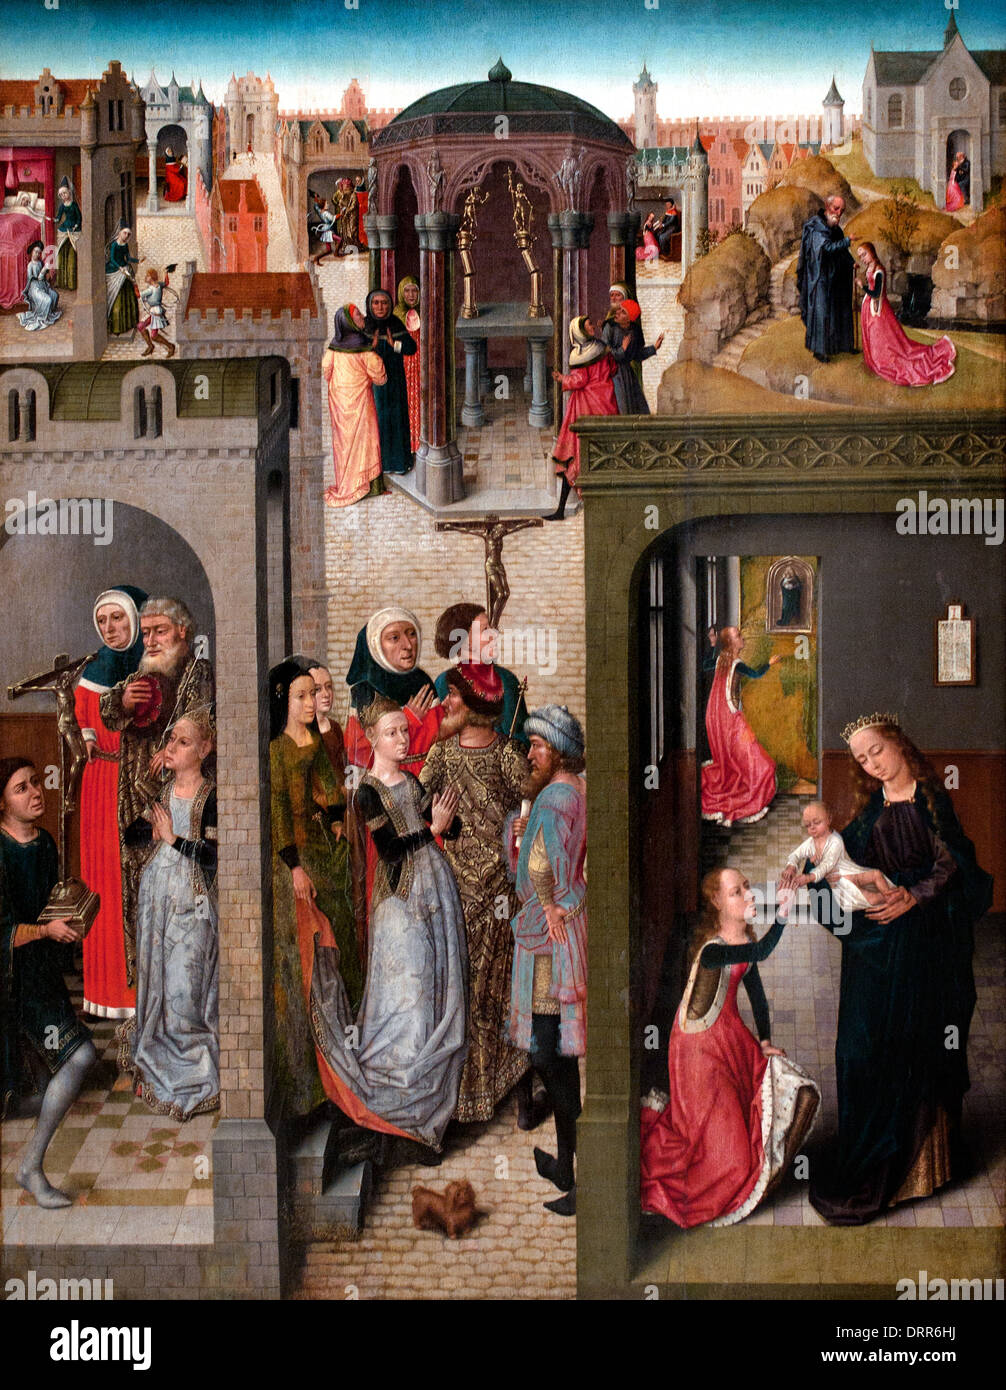 Maestro di Santa Caterina leggenda 1475 = 1500 scene Medioevo belga fiamminga del Belgio Foto Stock